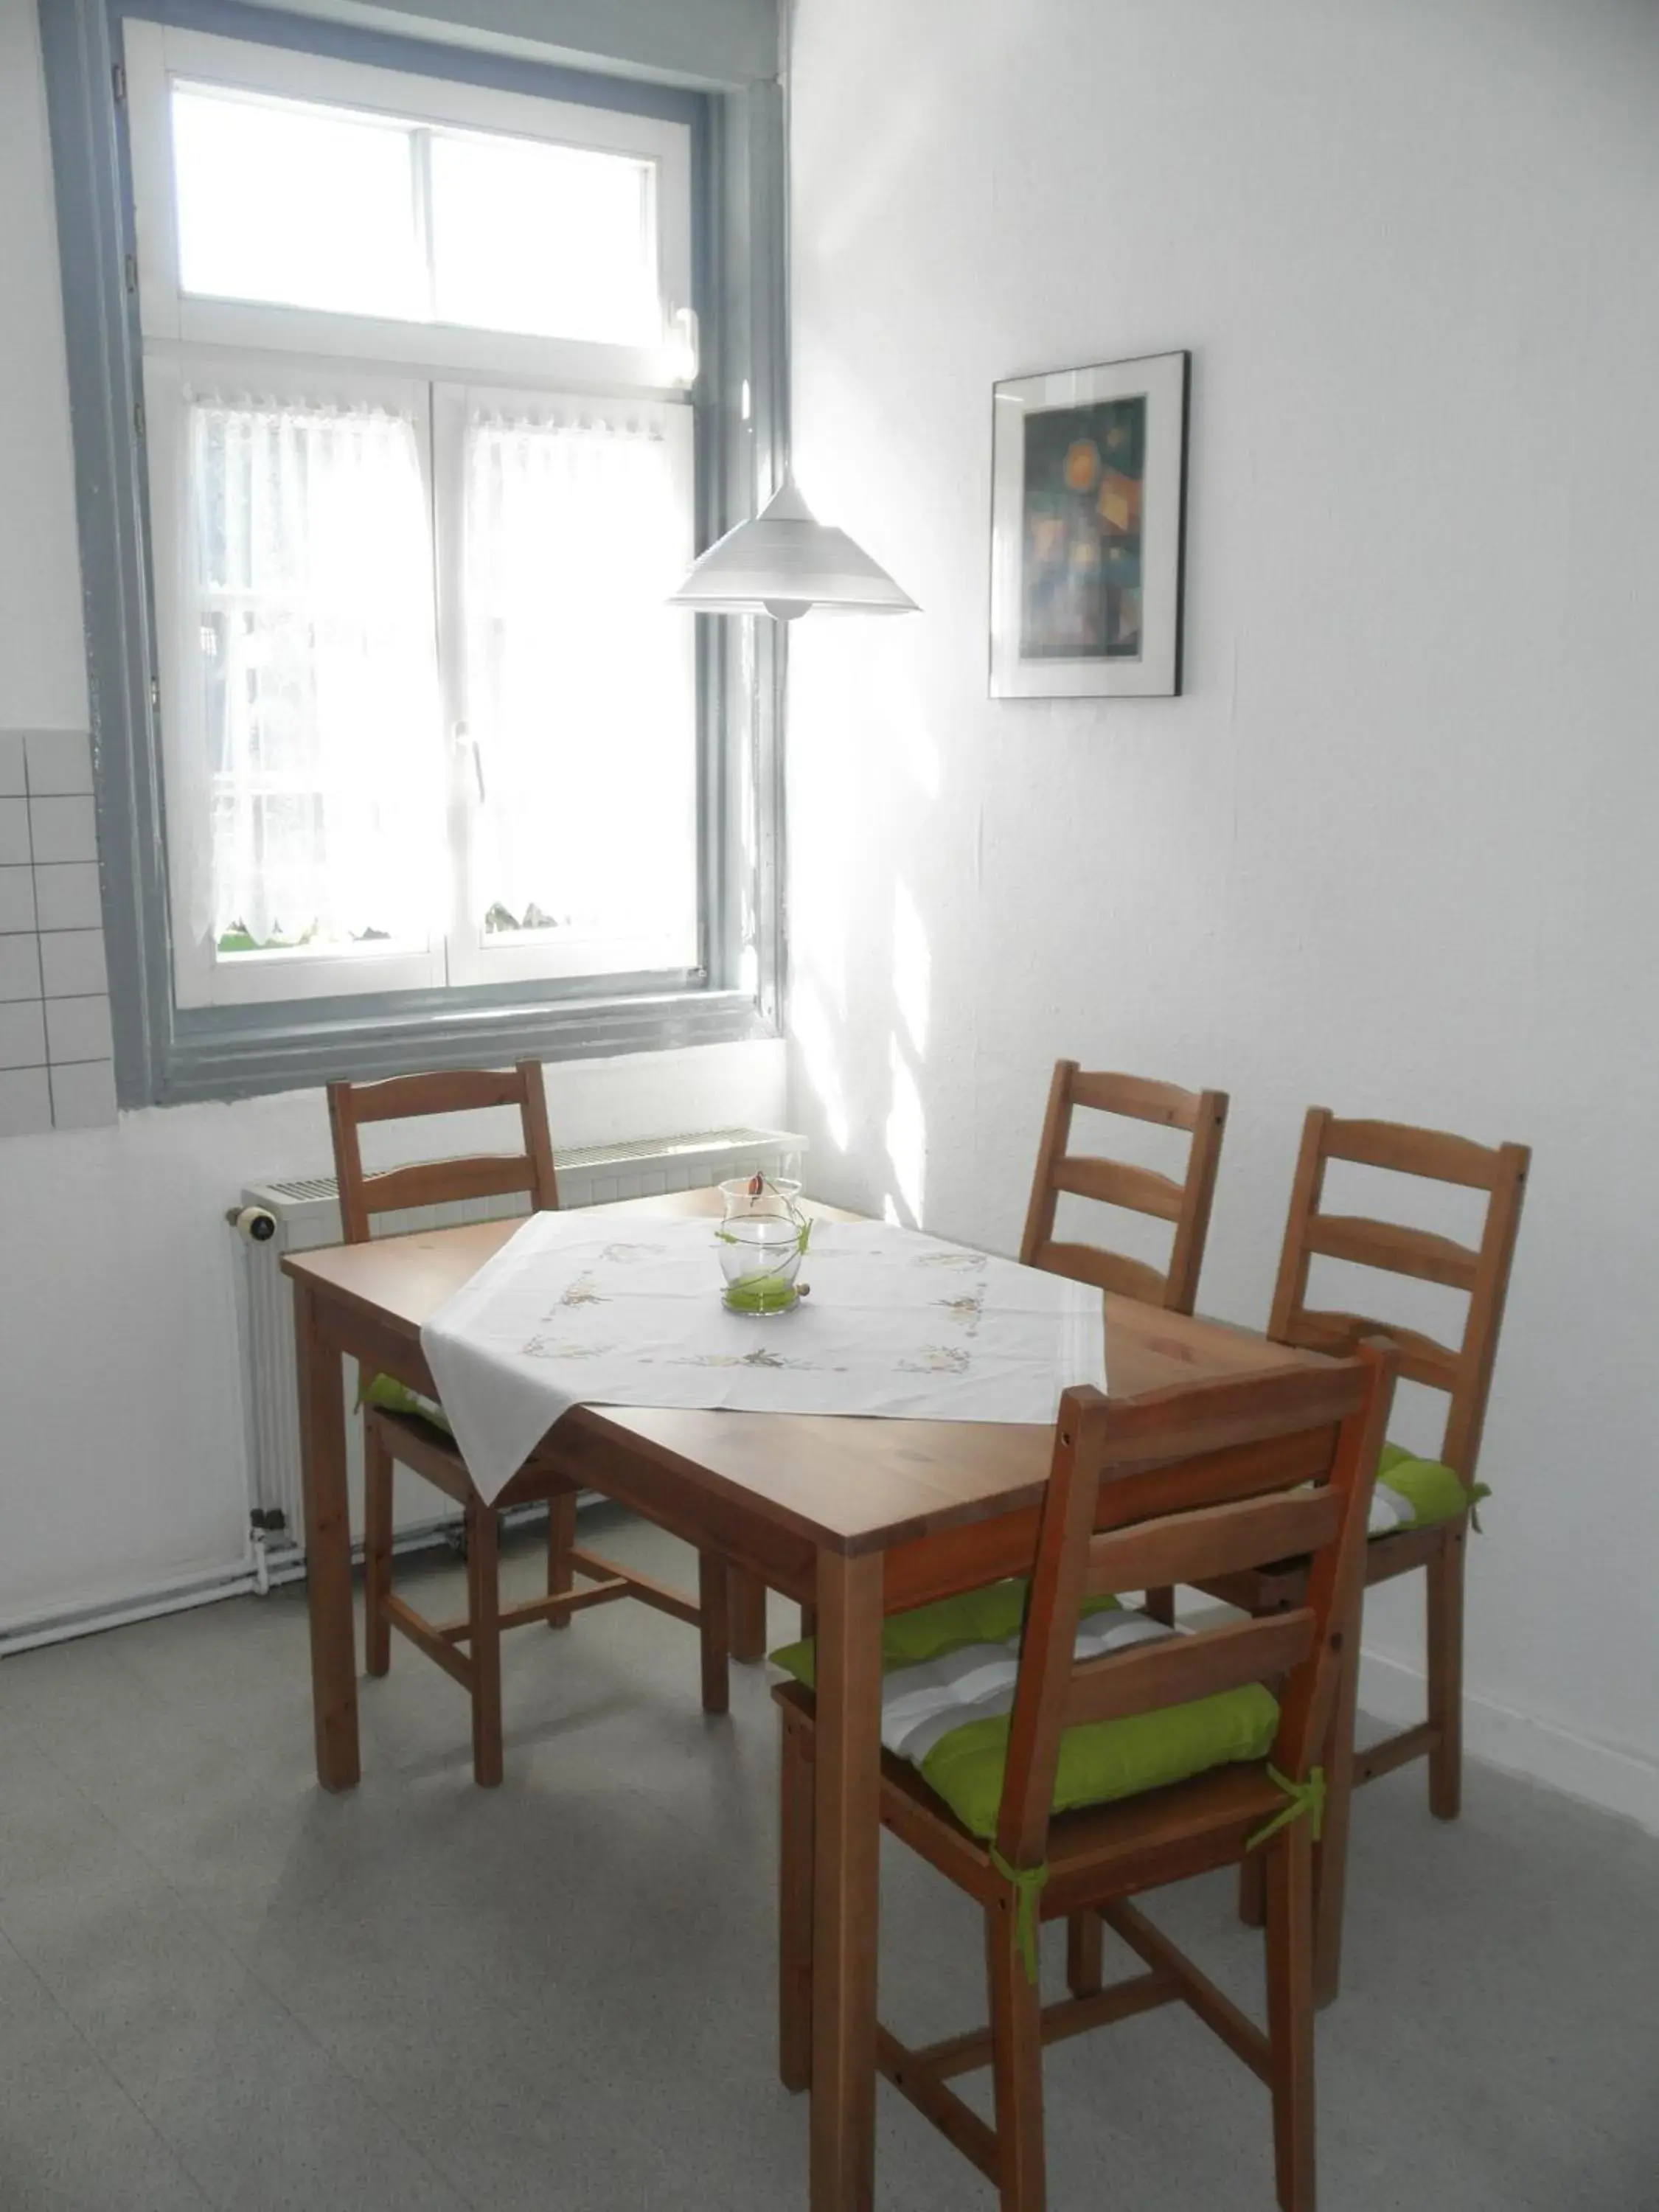 Dining Area in Altstadthaus